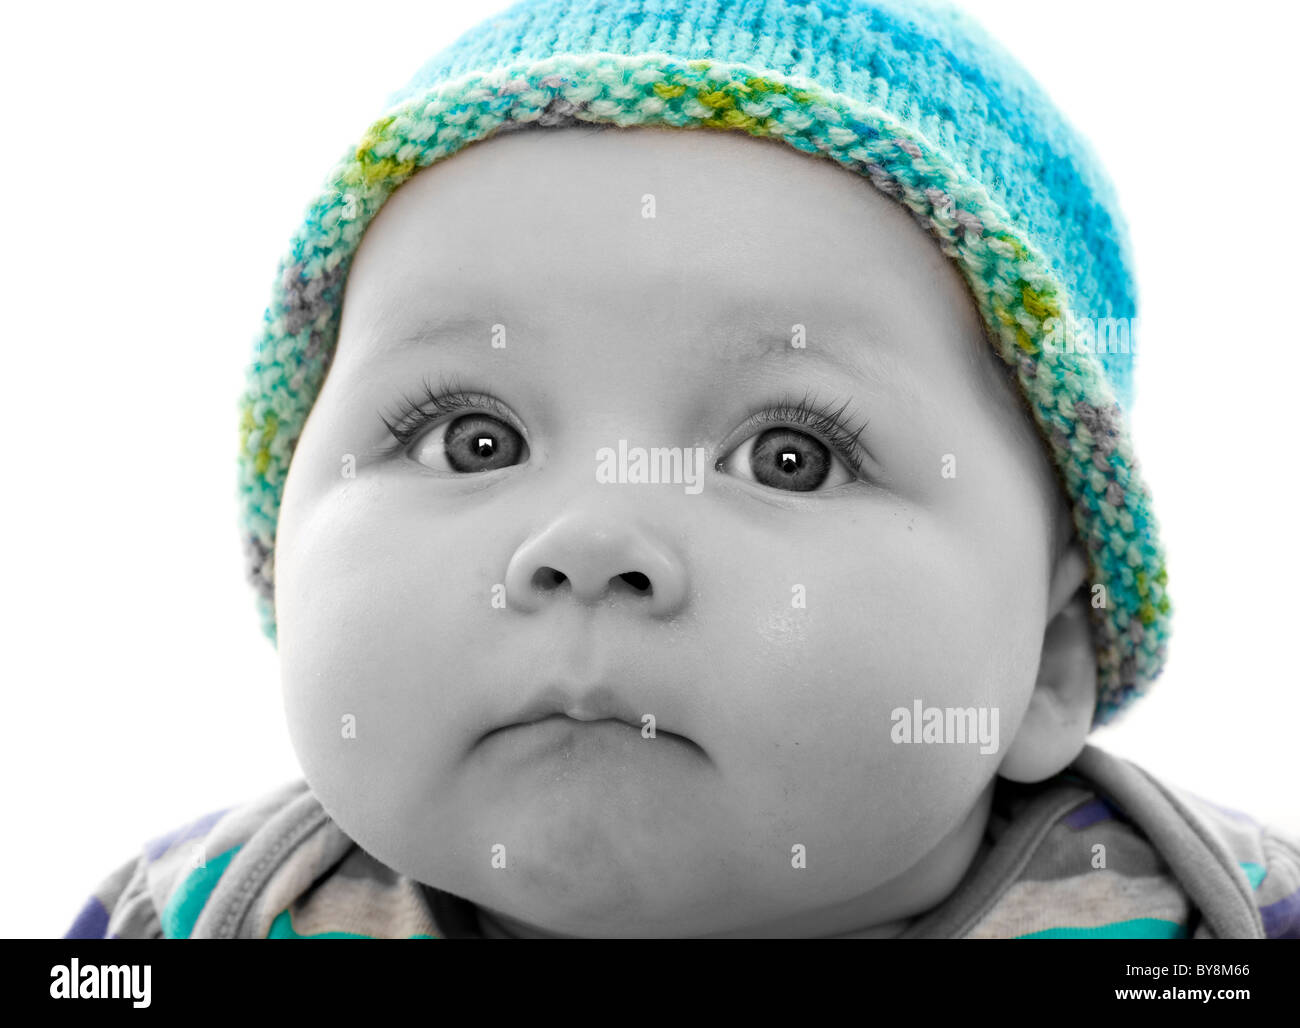 Spot farbige monochrome Kopfaufnahme eines Babys mit türkisfarbenem Strickmütze, das aus der Schussaufnahme schaut Stockfoto